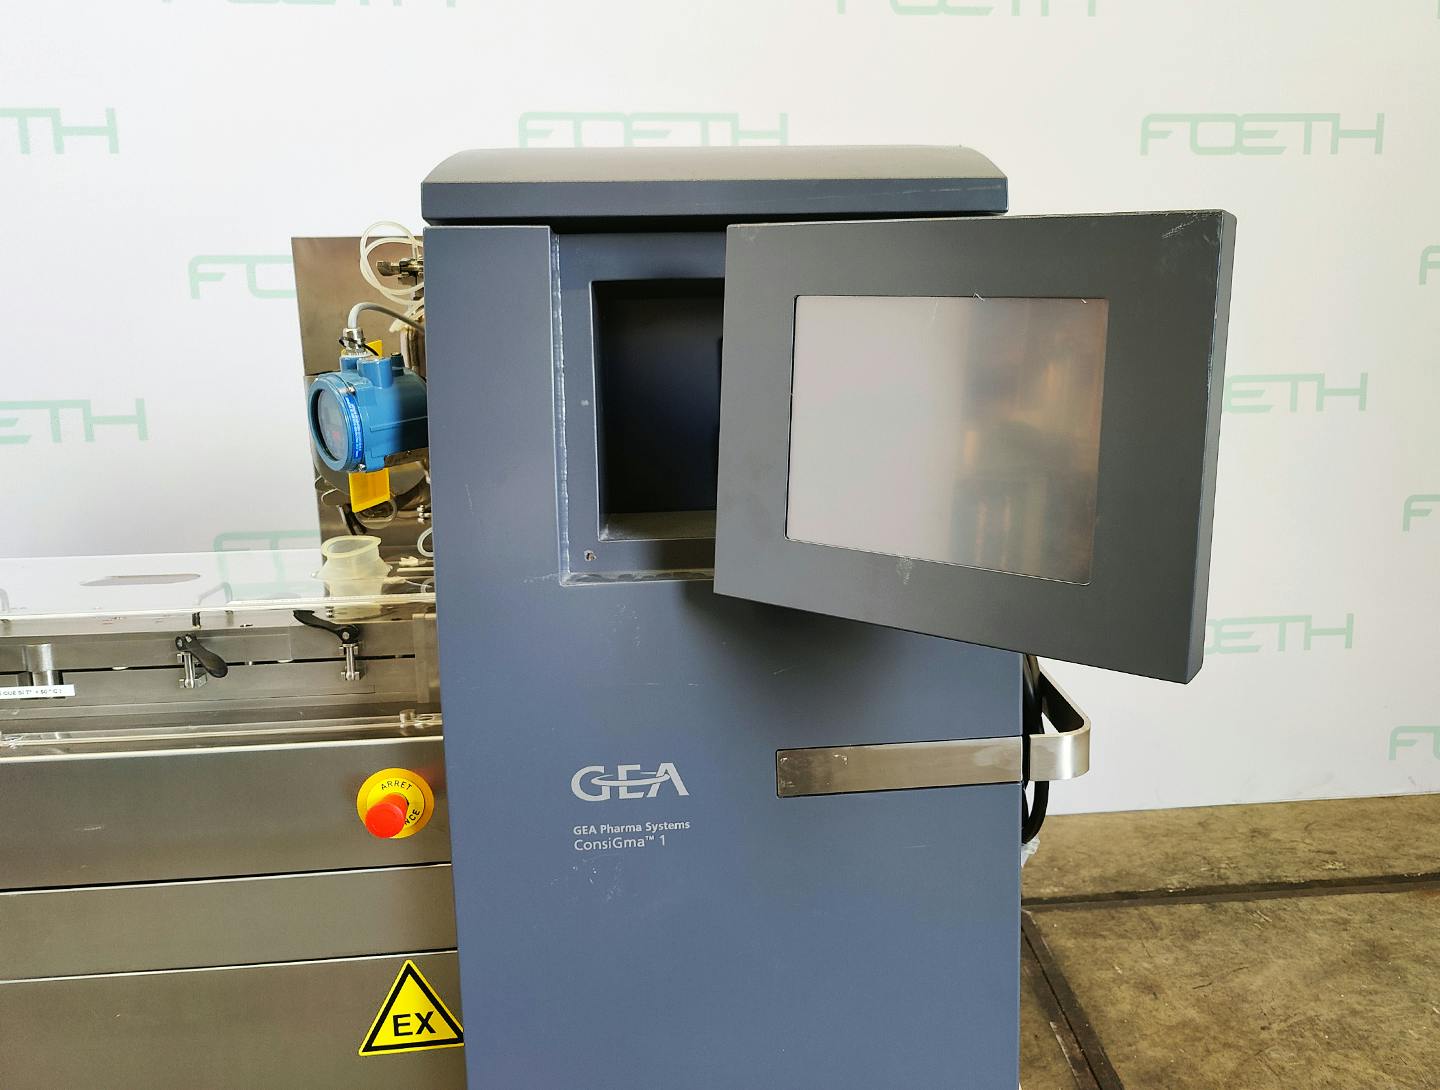 GEA Process ConsiGma 1 Granulator - Dvoušnekový extrudér - image 16